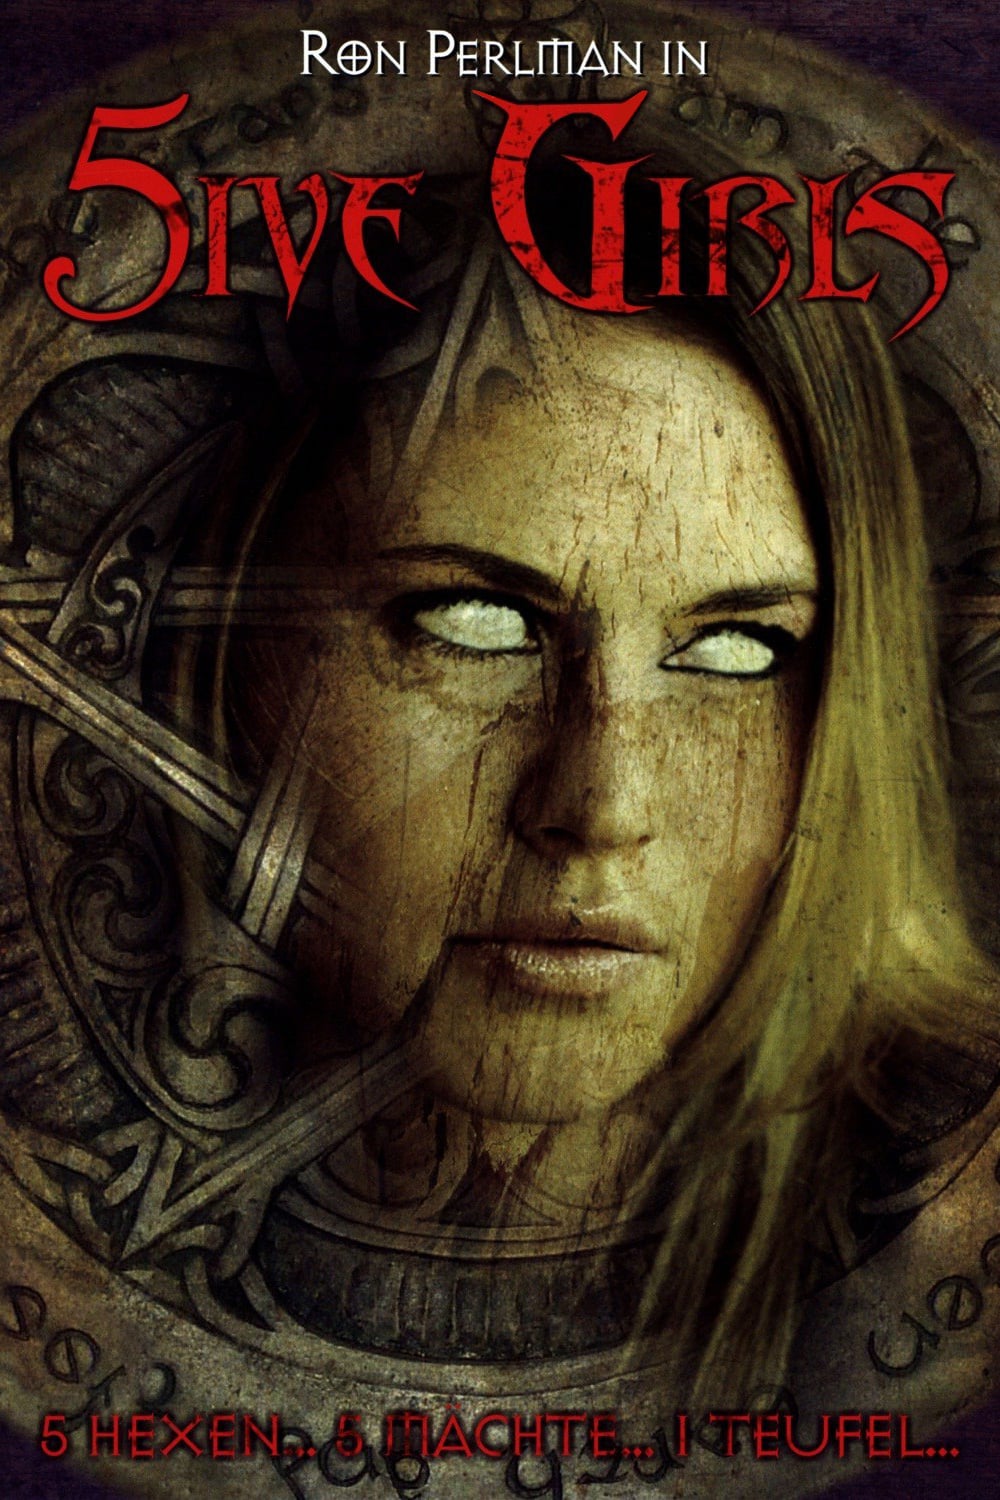 Plakat von "5ive Girls"